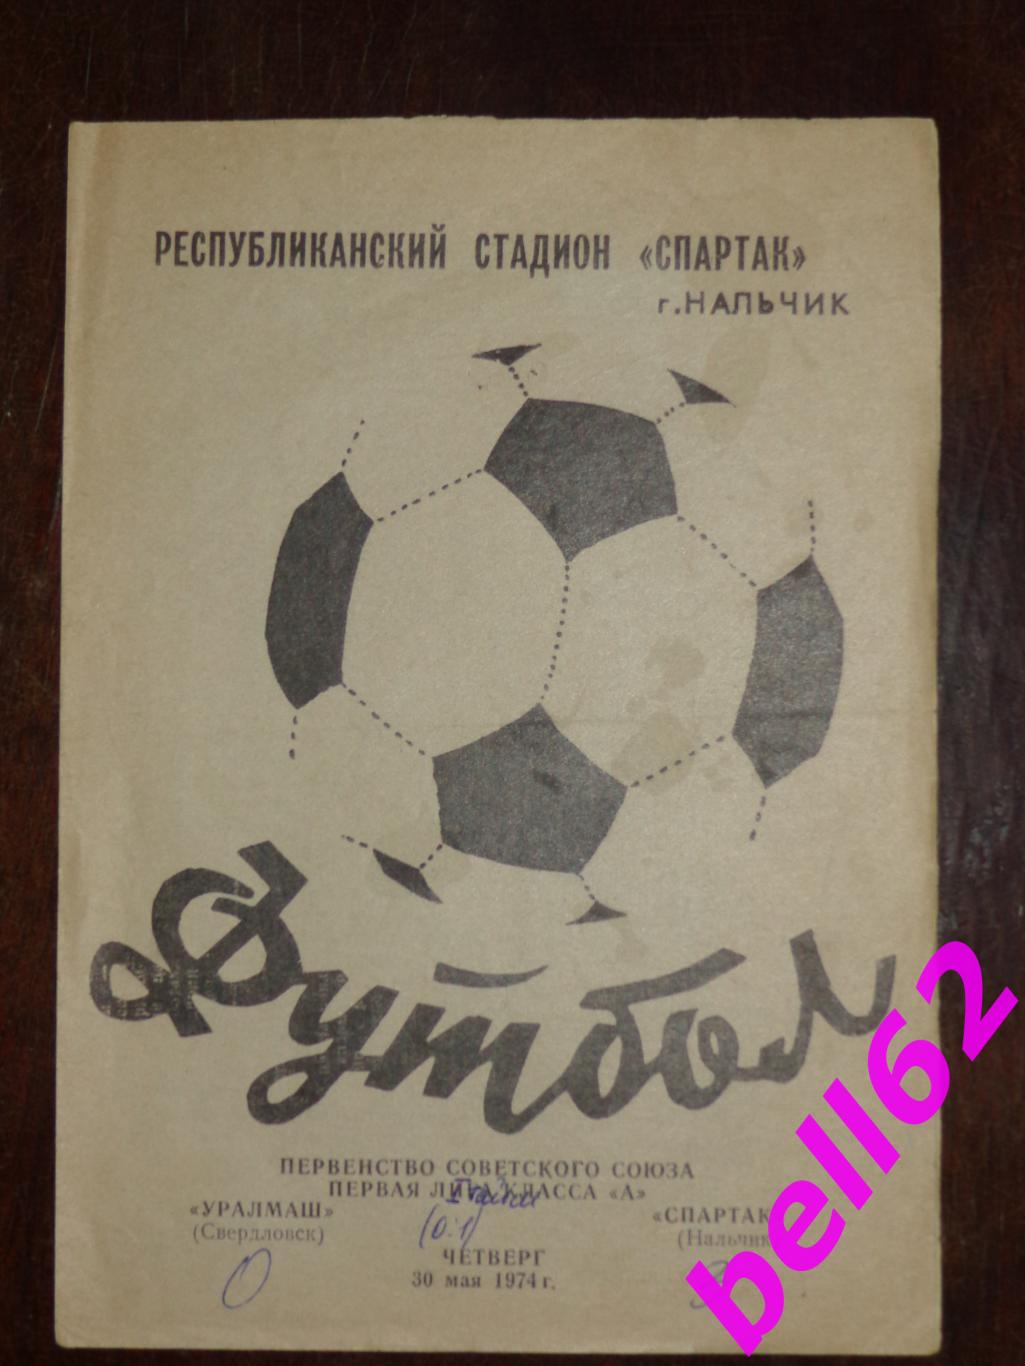 Спартак(Нальчик)- Уралмаш (Свердловск)-30.05.1974г.